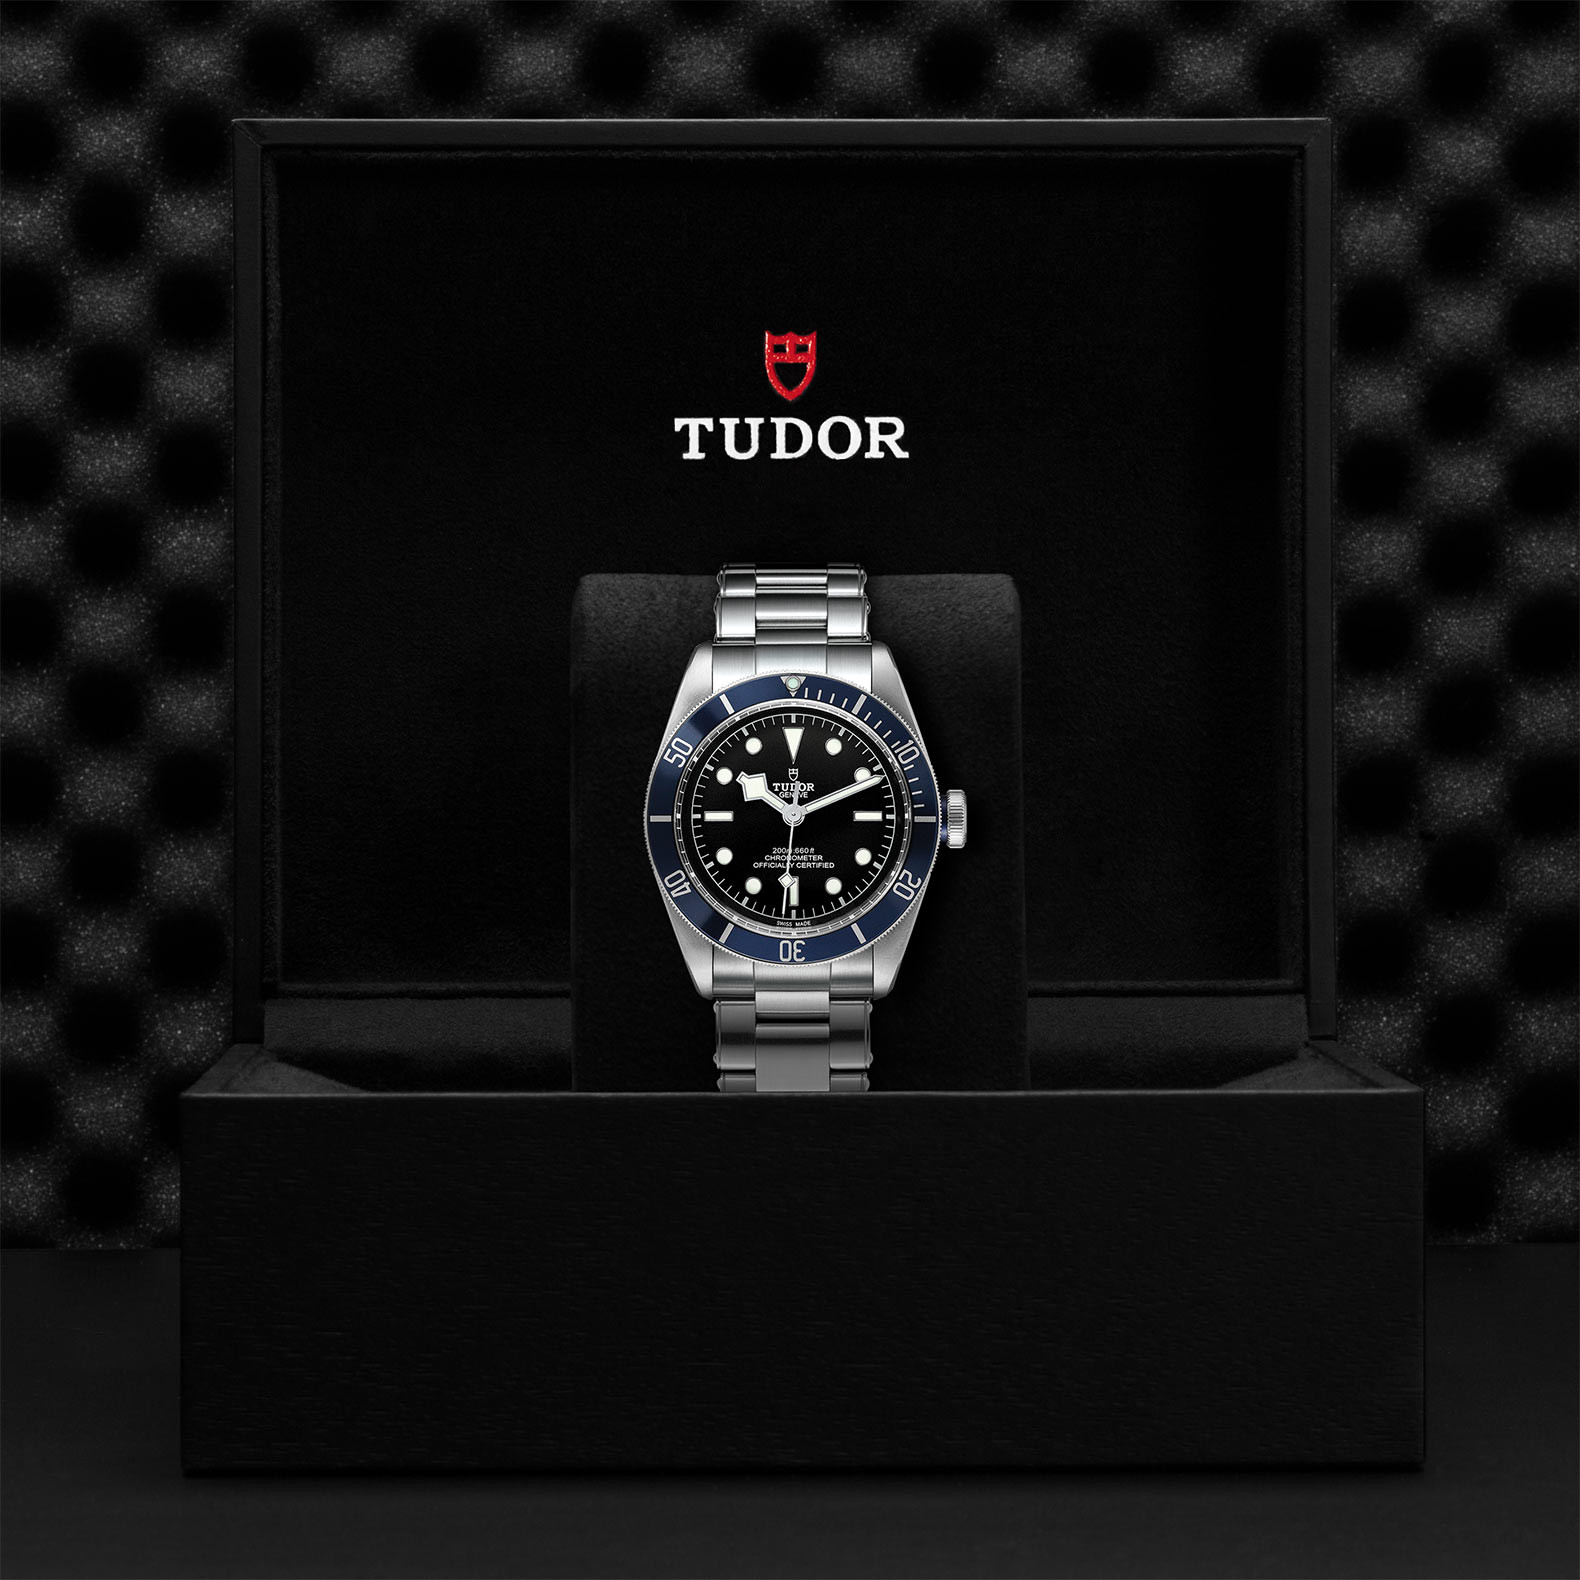 TUDOR Black Bay Watch in Presentation Box